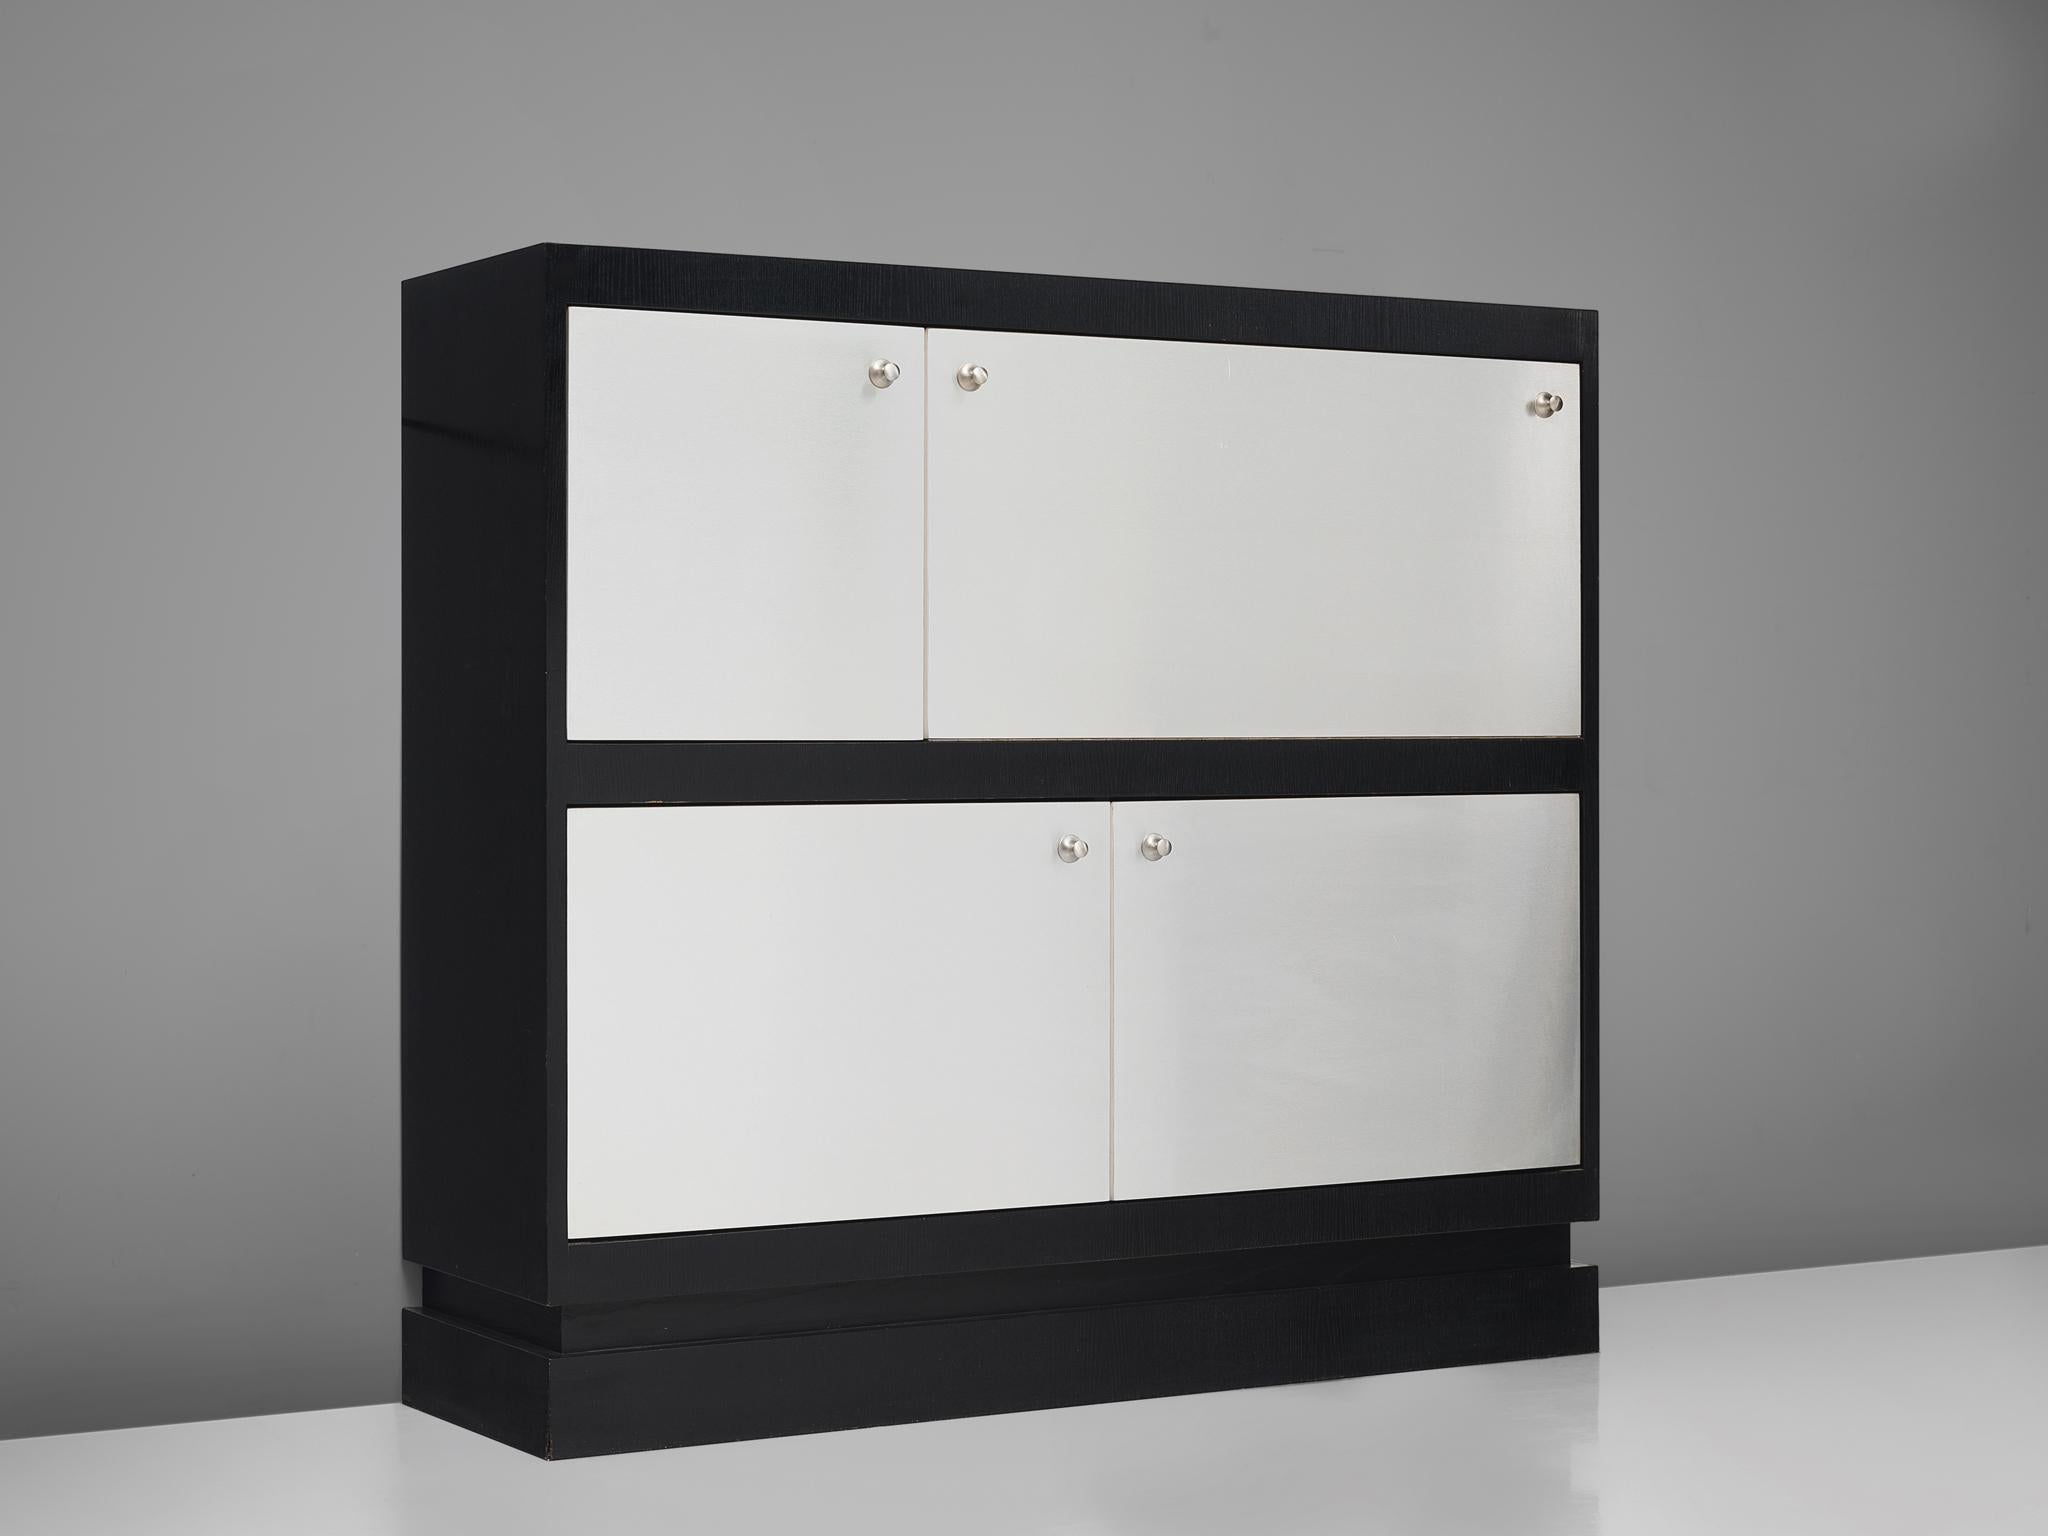 De Coene, armoire, frêne laqué, aluminium brossé, Belgique, 1970.

Cette armoire postmoderne est fabriquée par De Coene et est équipée de portes et de poignées plaquées aluminium. Le meuble est divisé en quatre portes asymétriques dont la plus